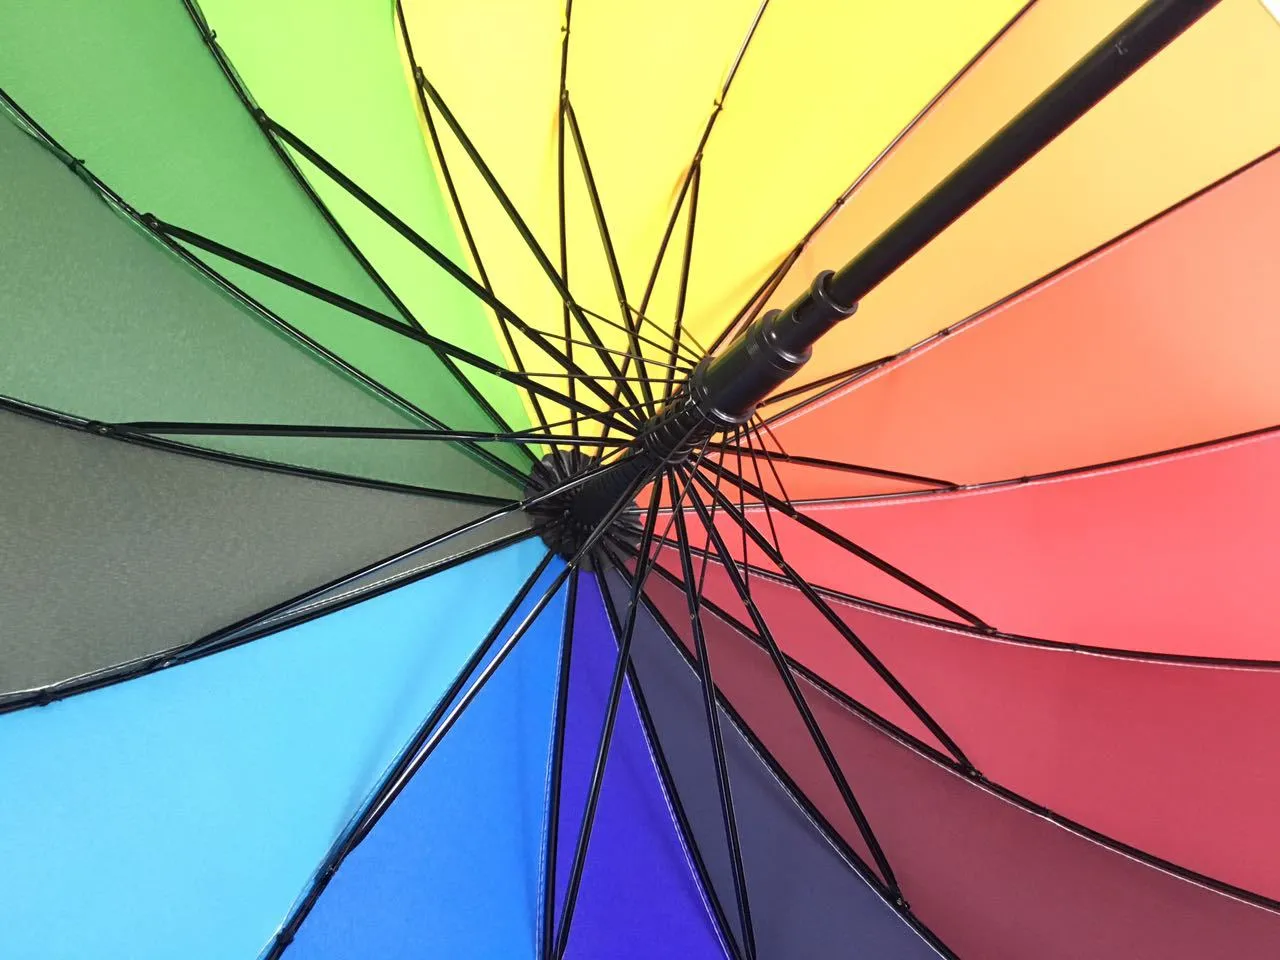 C-Haken-Regenbogen-Regenschirm-langer Griff 16K gerade winddichter bunter Pongee-Regenschirm-Frauen-Männer sonniger regnerischer Regenschirm HH7-1116